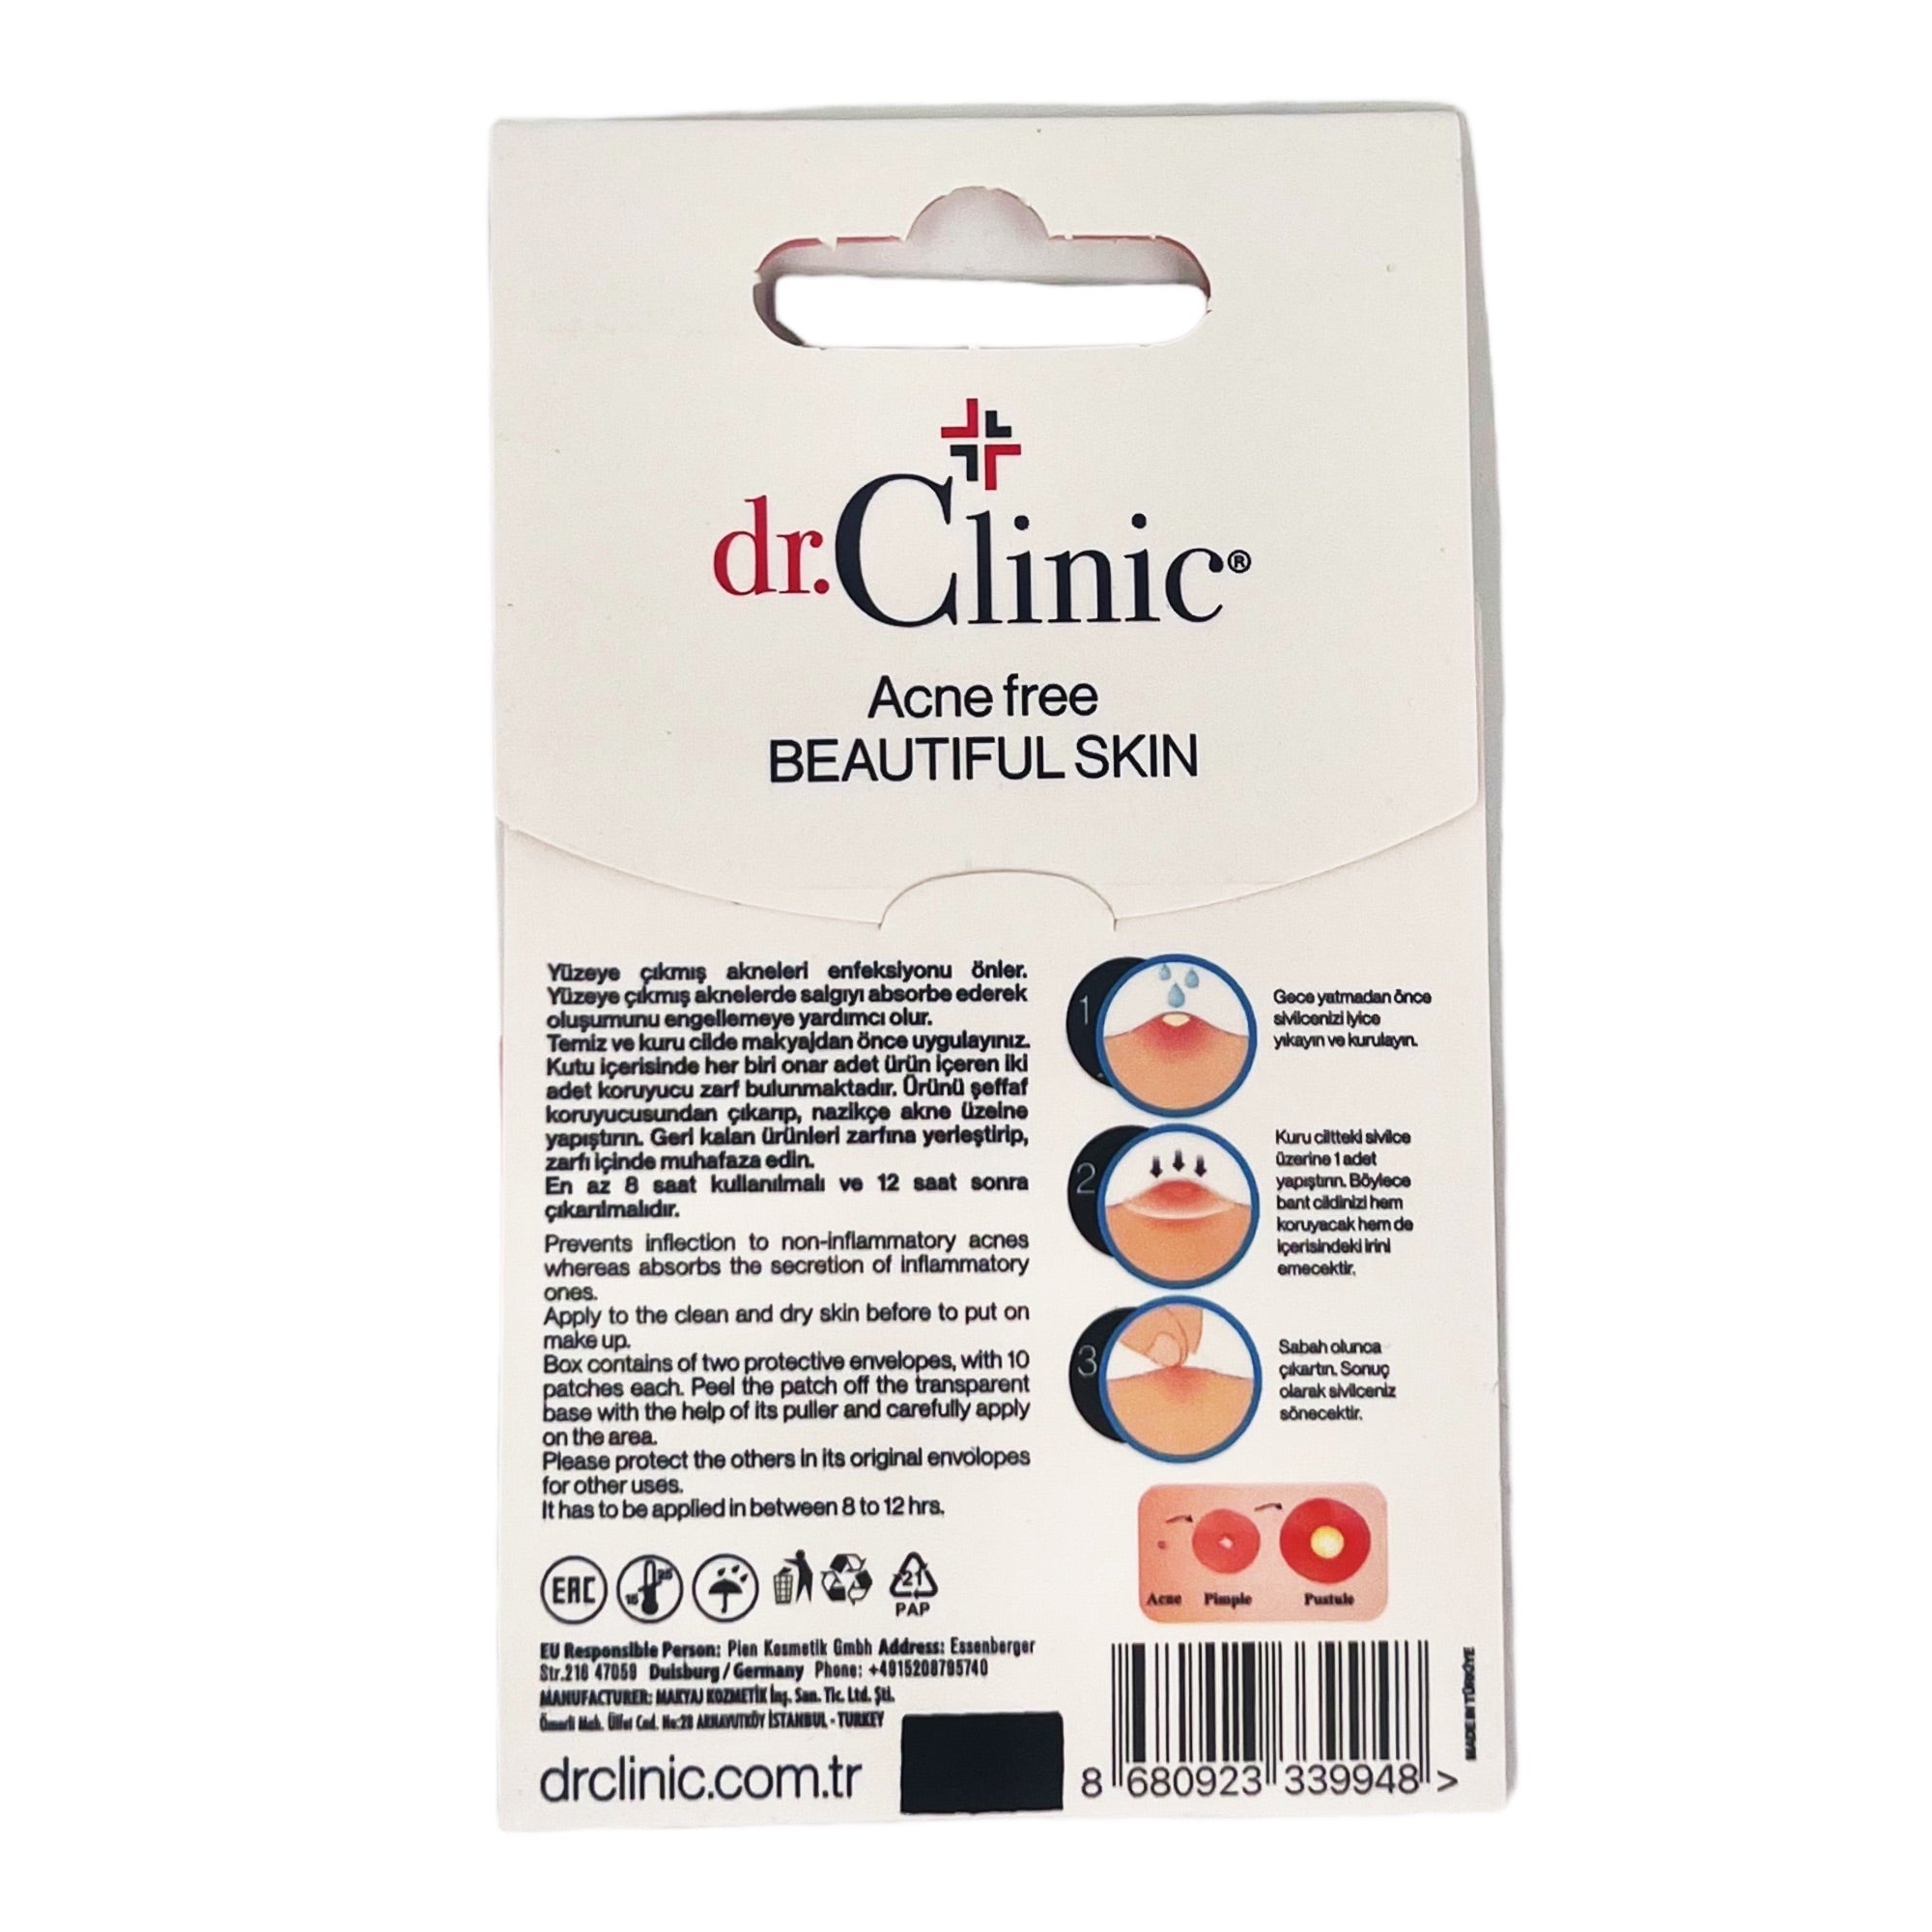 Dr.Clinic - Acne Pimple Patch